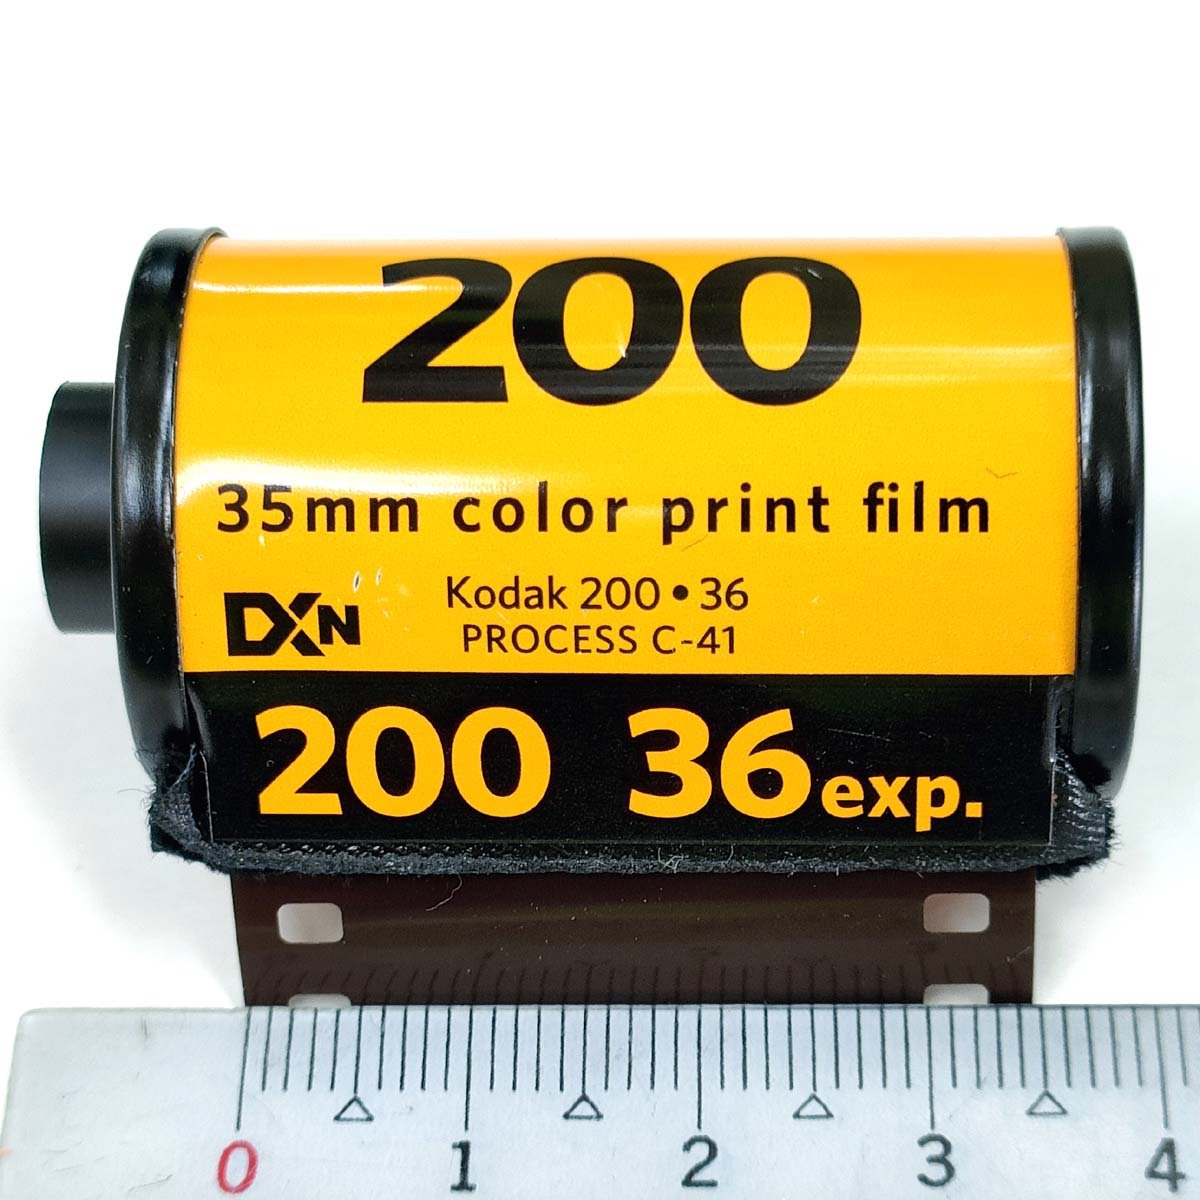 GOLD200-36 sheets .[10ps.@]Kodak color nega film ISO sensitivity 200 135/35mm[ prompt decision ]ko Duck CAT603-3997*0086806033992 new goods 